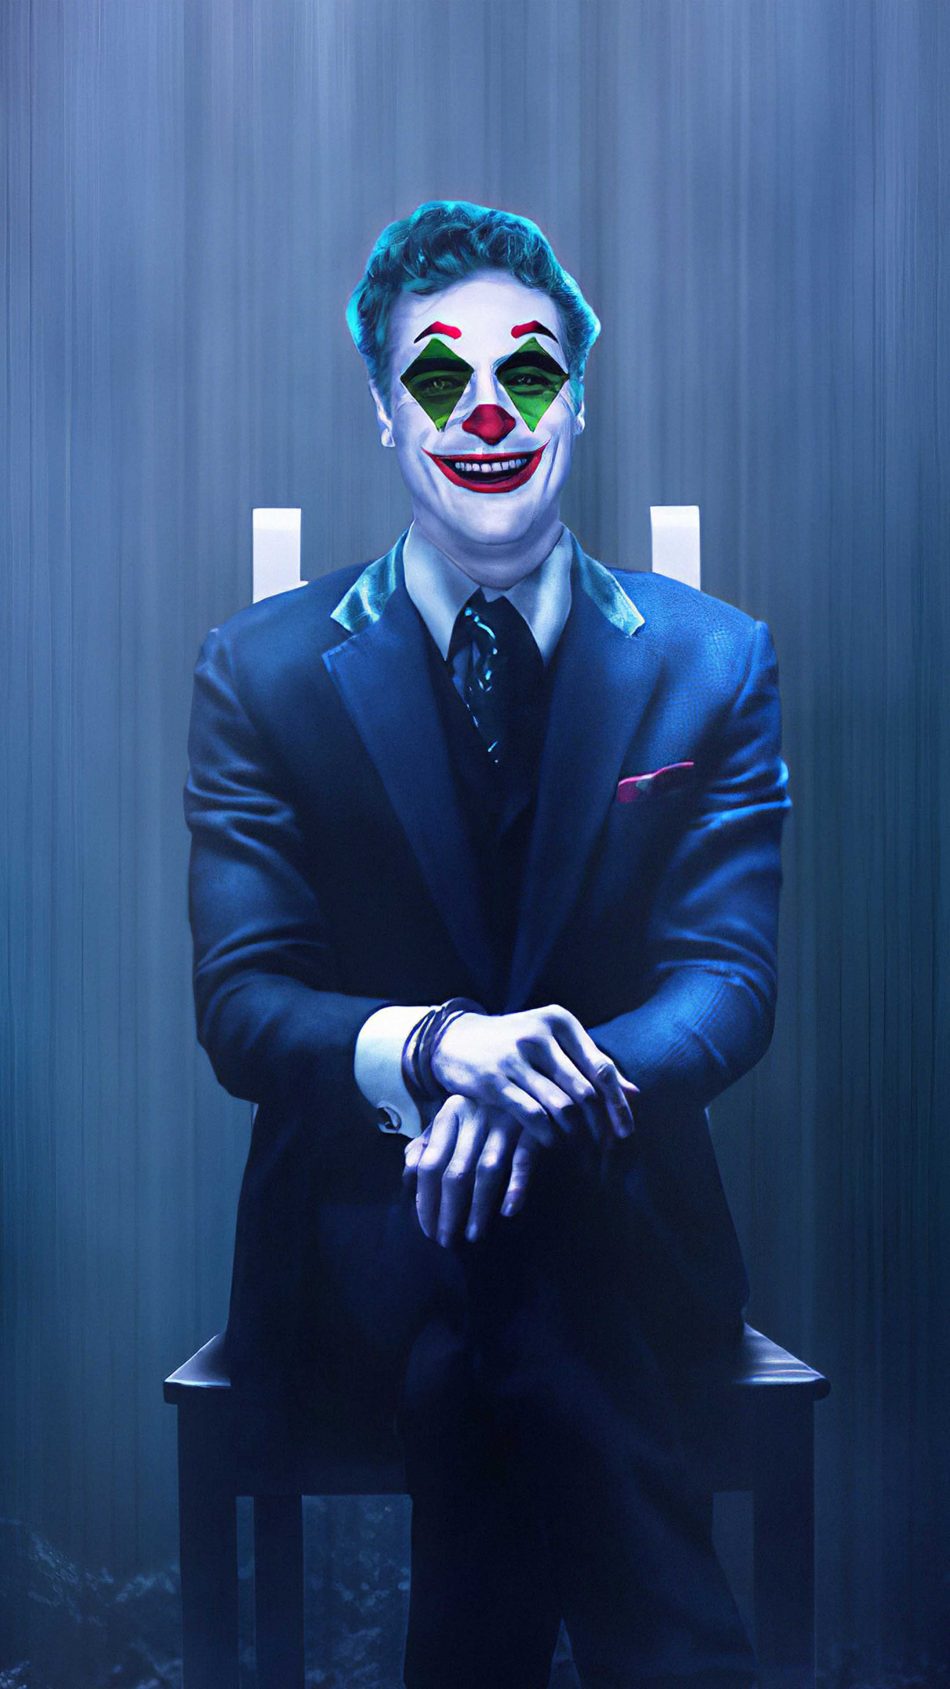 Joker Artwork 4K Ultra HD Mobile Wallpaper